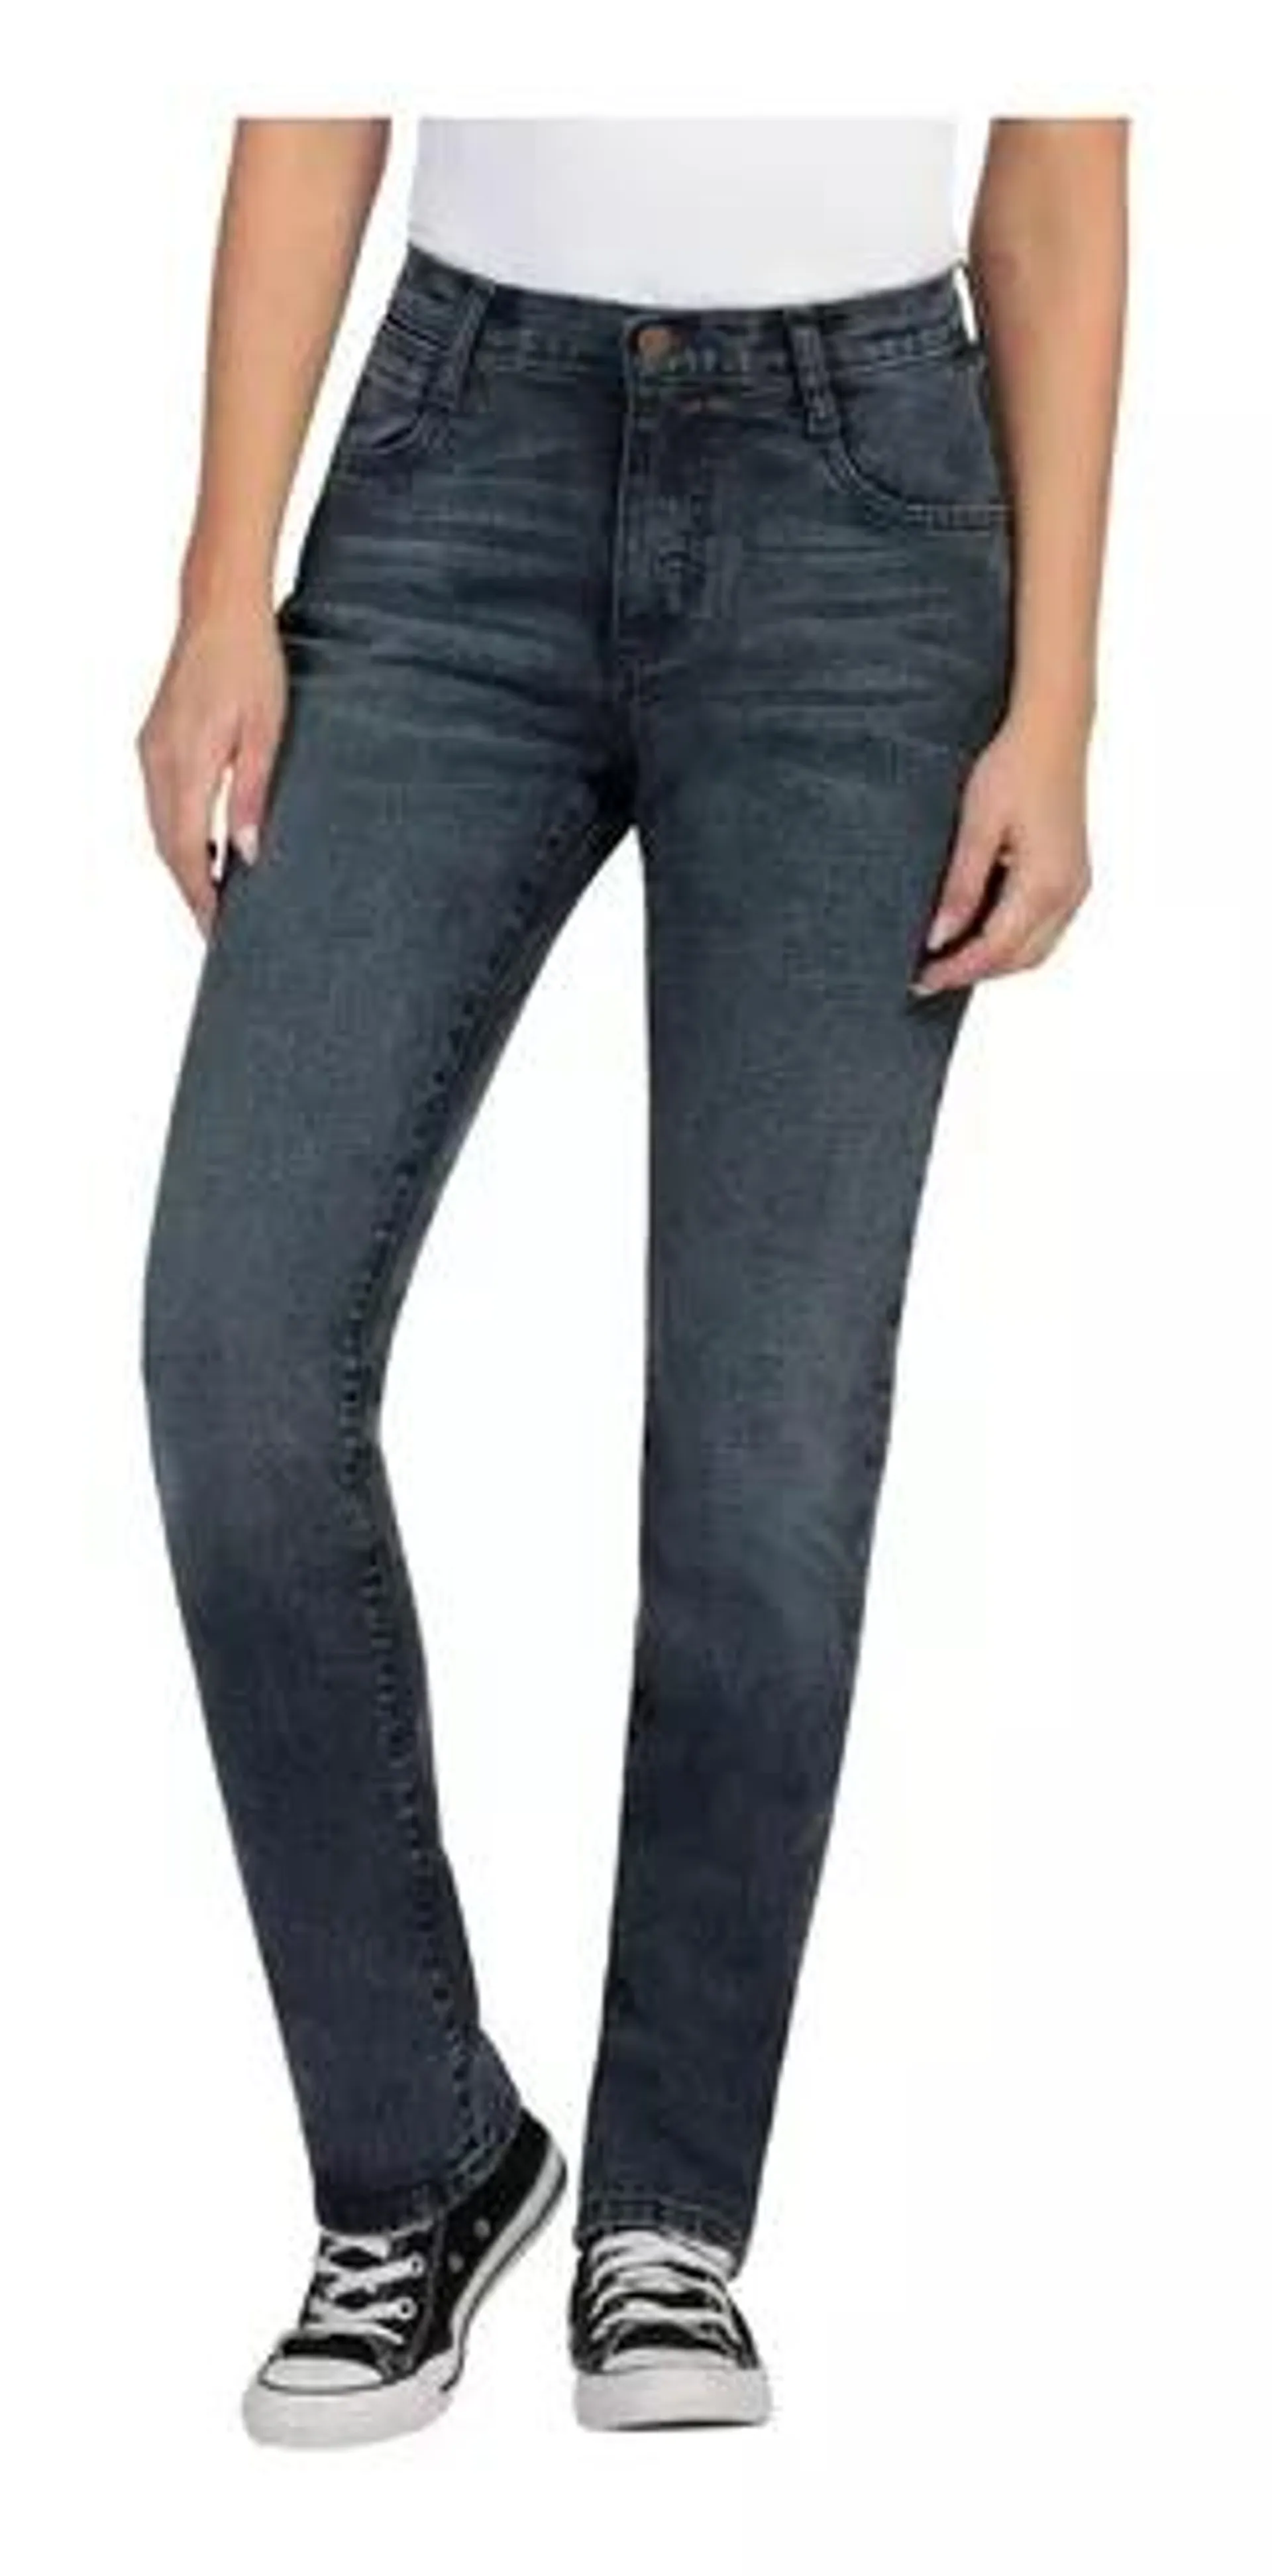 Pantalón Jeans Slim Fit Wrangler Mujer 620